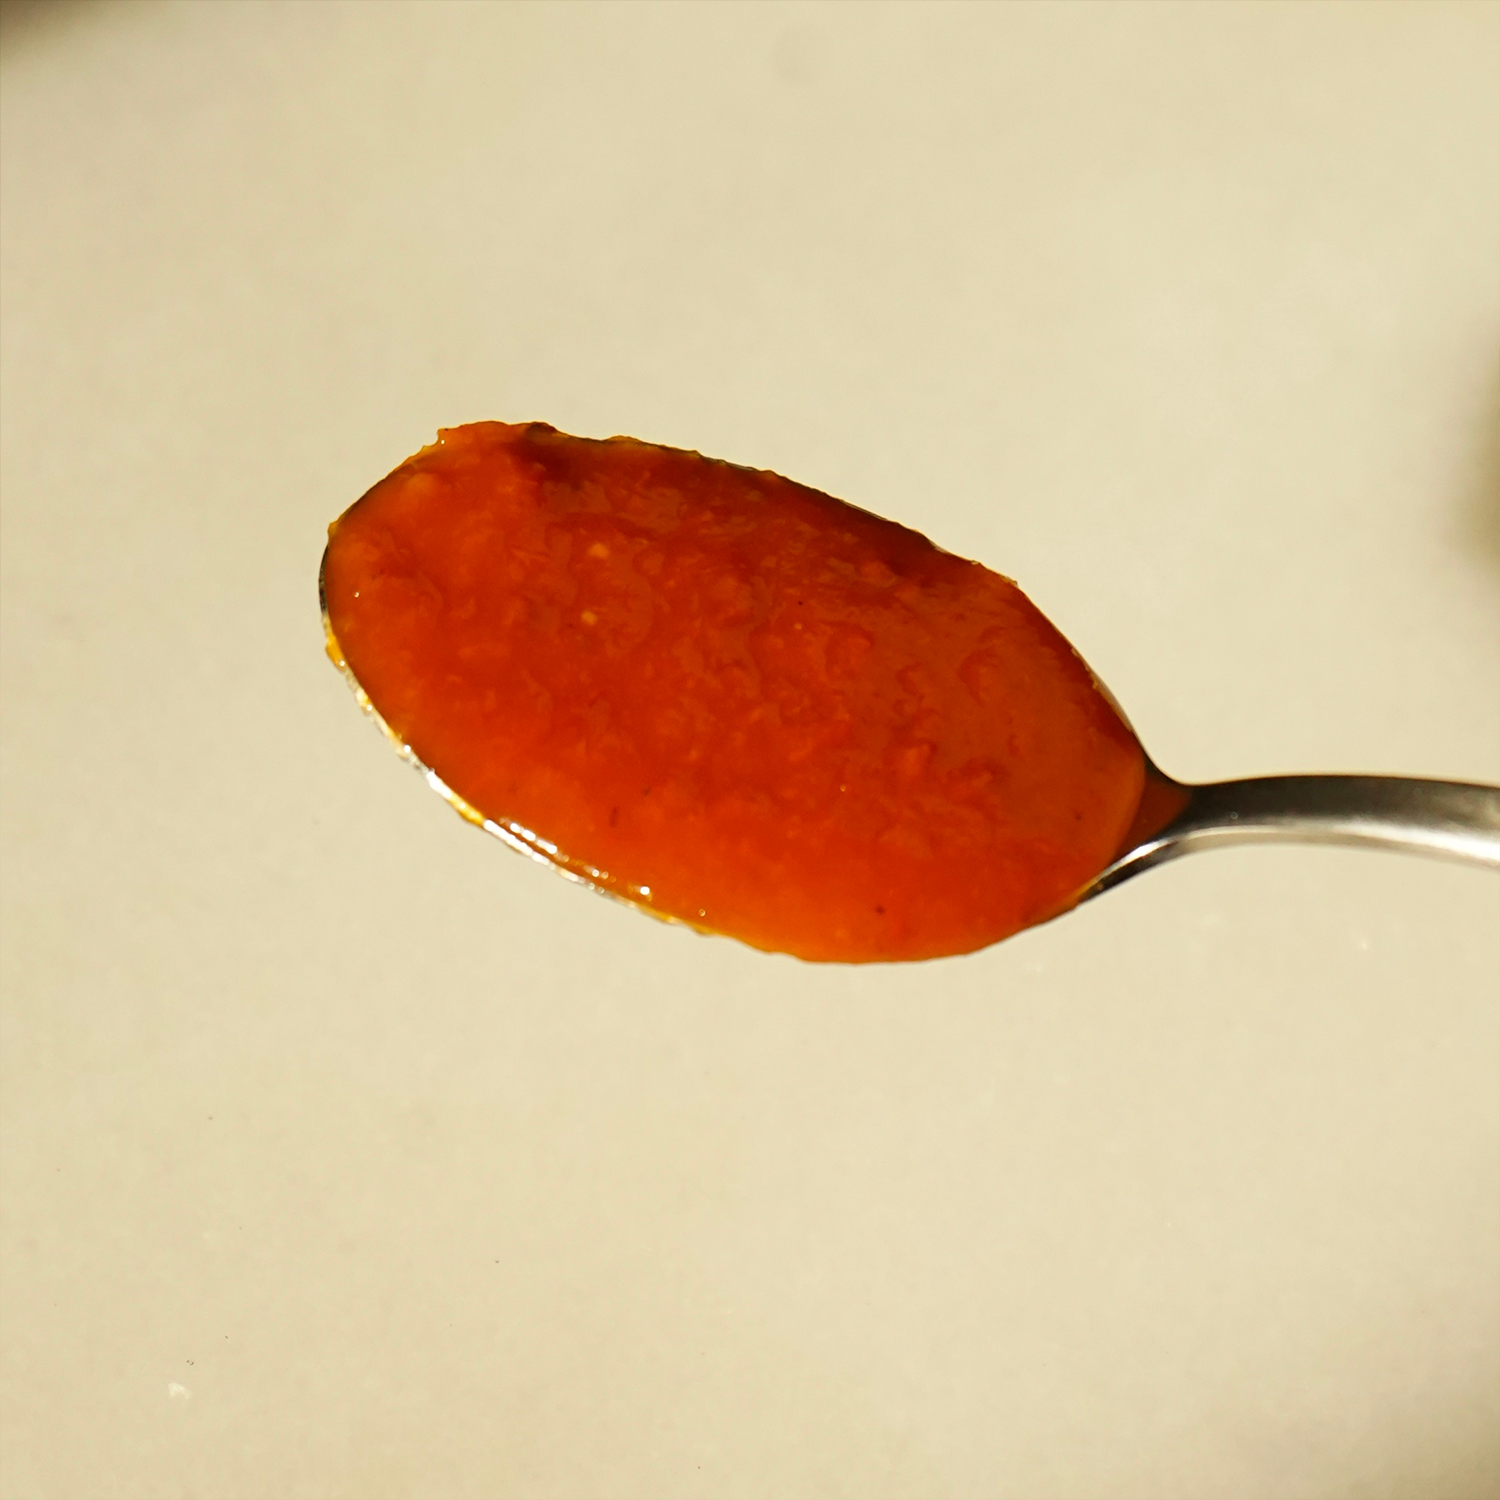 Detalle cuchara con salsa de tomate cherry ecológico